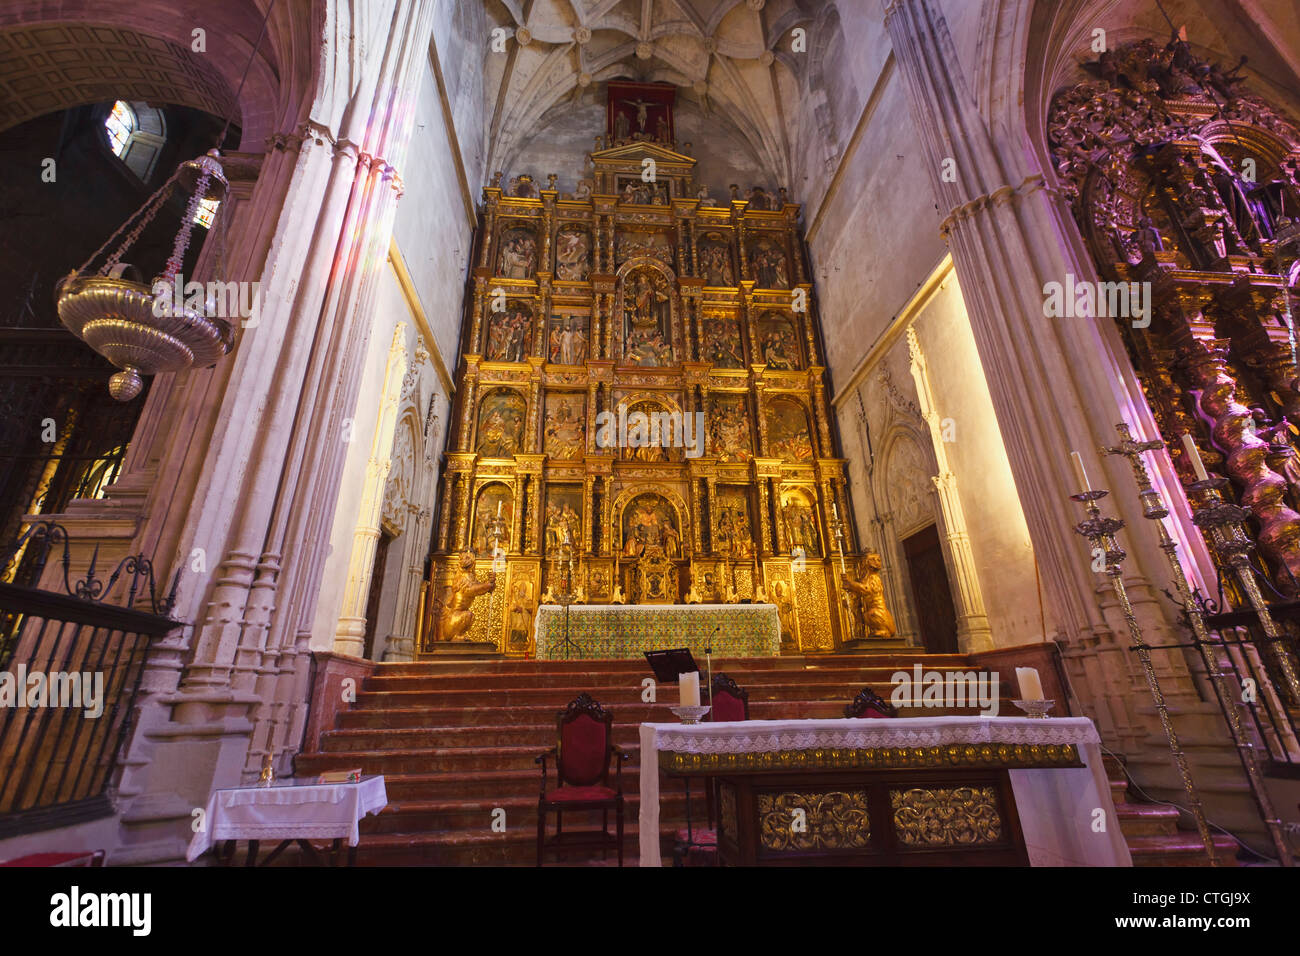 Carmona, provincia de Sevilla, España. Interior de la Prioral de Santa María. Priorato de Santa Maria. Foto de stock